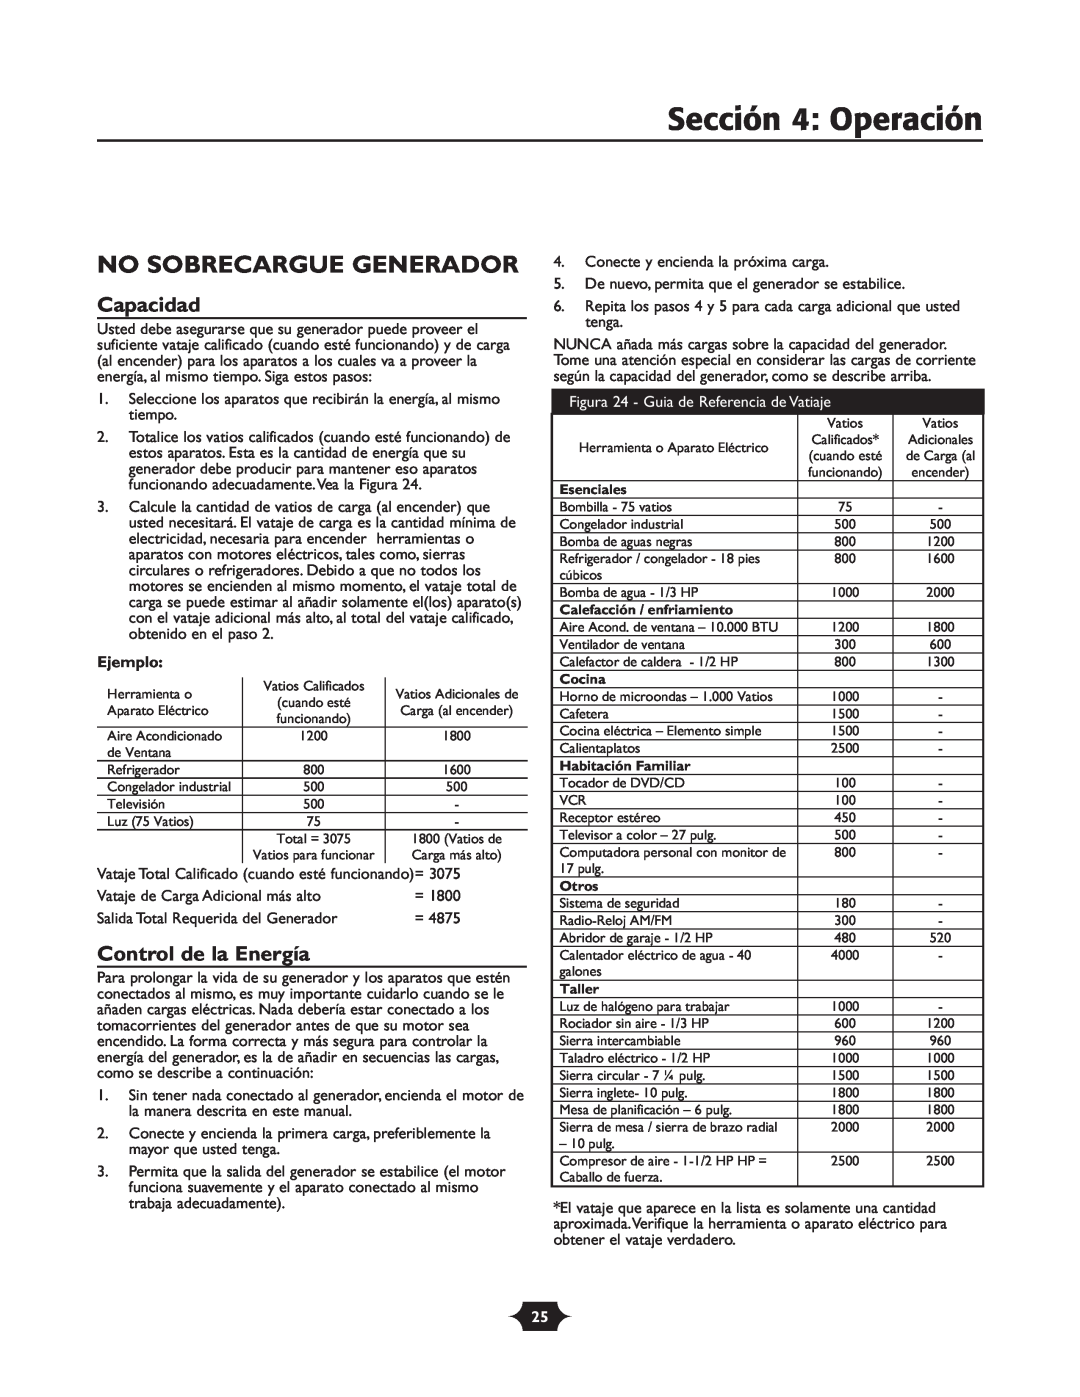 Troy-Bilt 030245 manual No Sobrecargue Generador, Capacidad, Control de la Energía, Sección 4 Operación, Ejemplo 